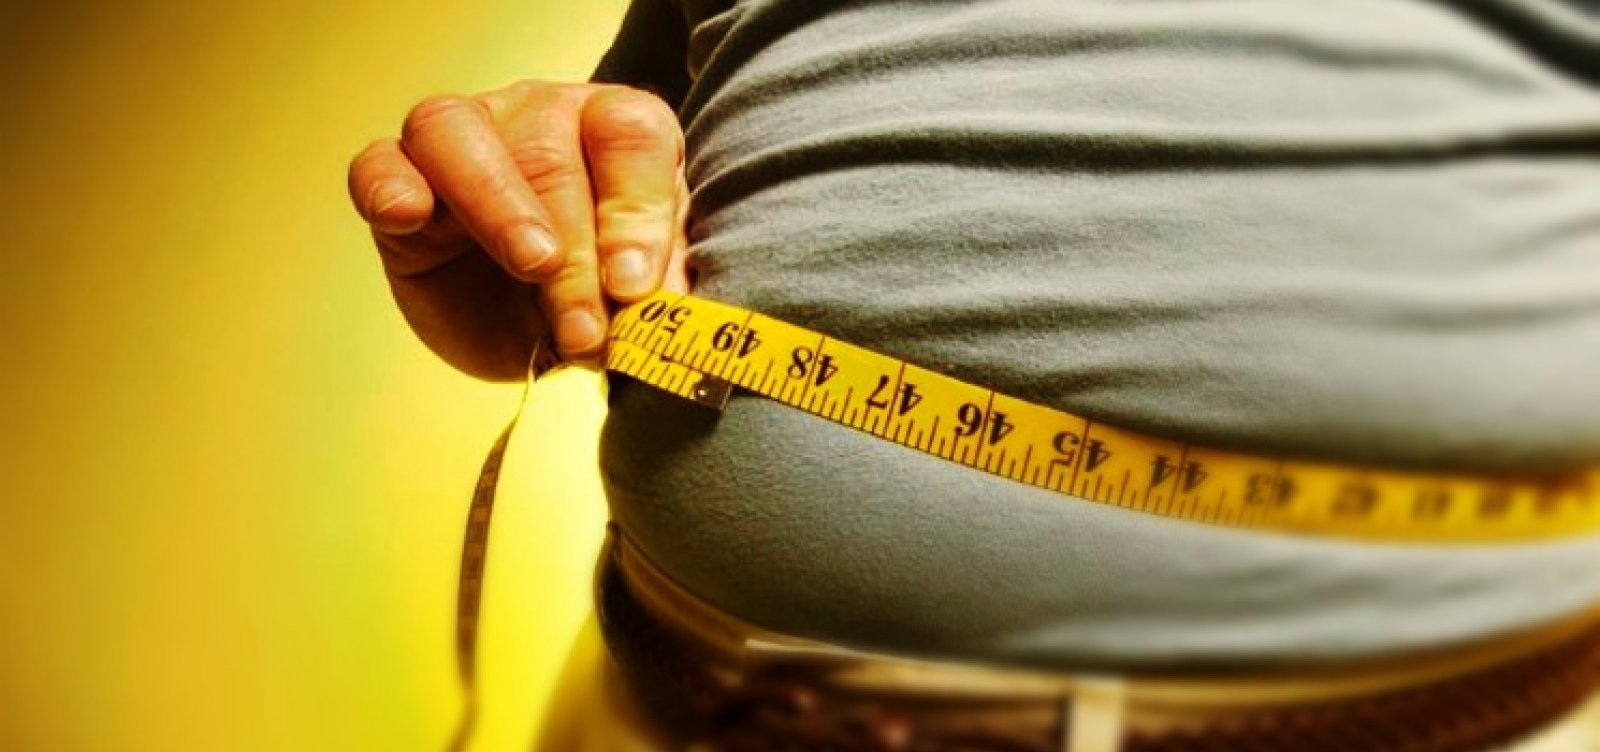 Obesidade pode ser fator de risco para a covid-19, afirma cardiologista